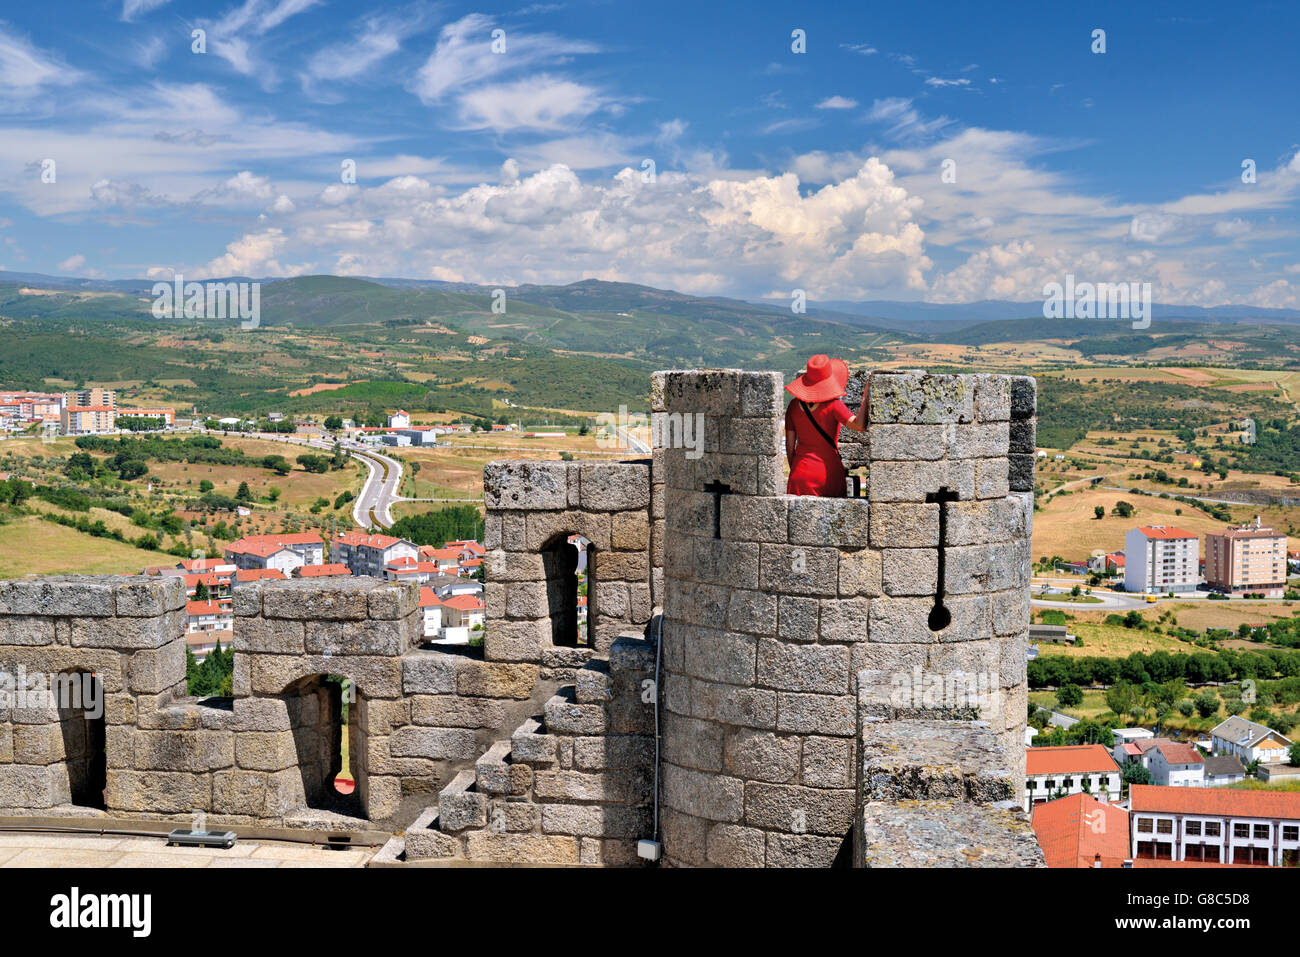 Portugal, Trás-os-Montes: Mujeres con Red Hat y vestido rojo en una torre del castillo medieval de Braganca Foto de stock